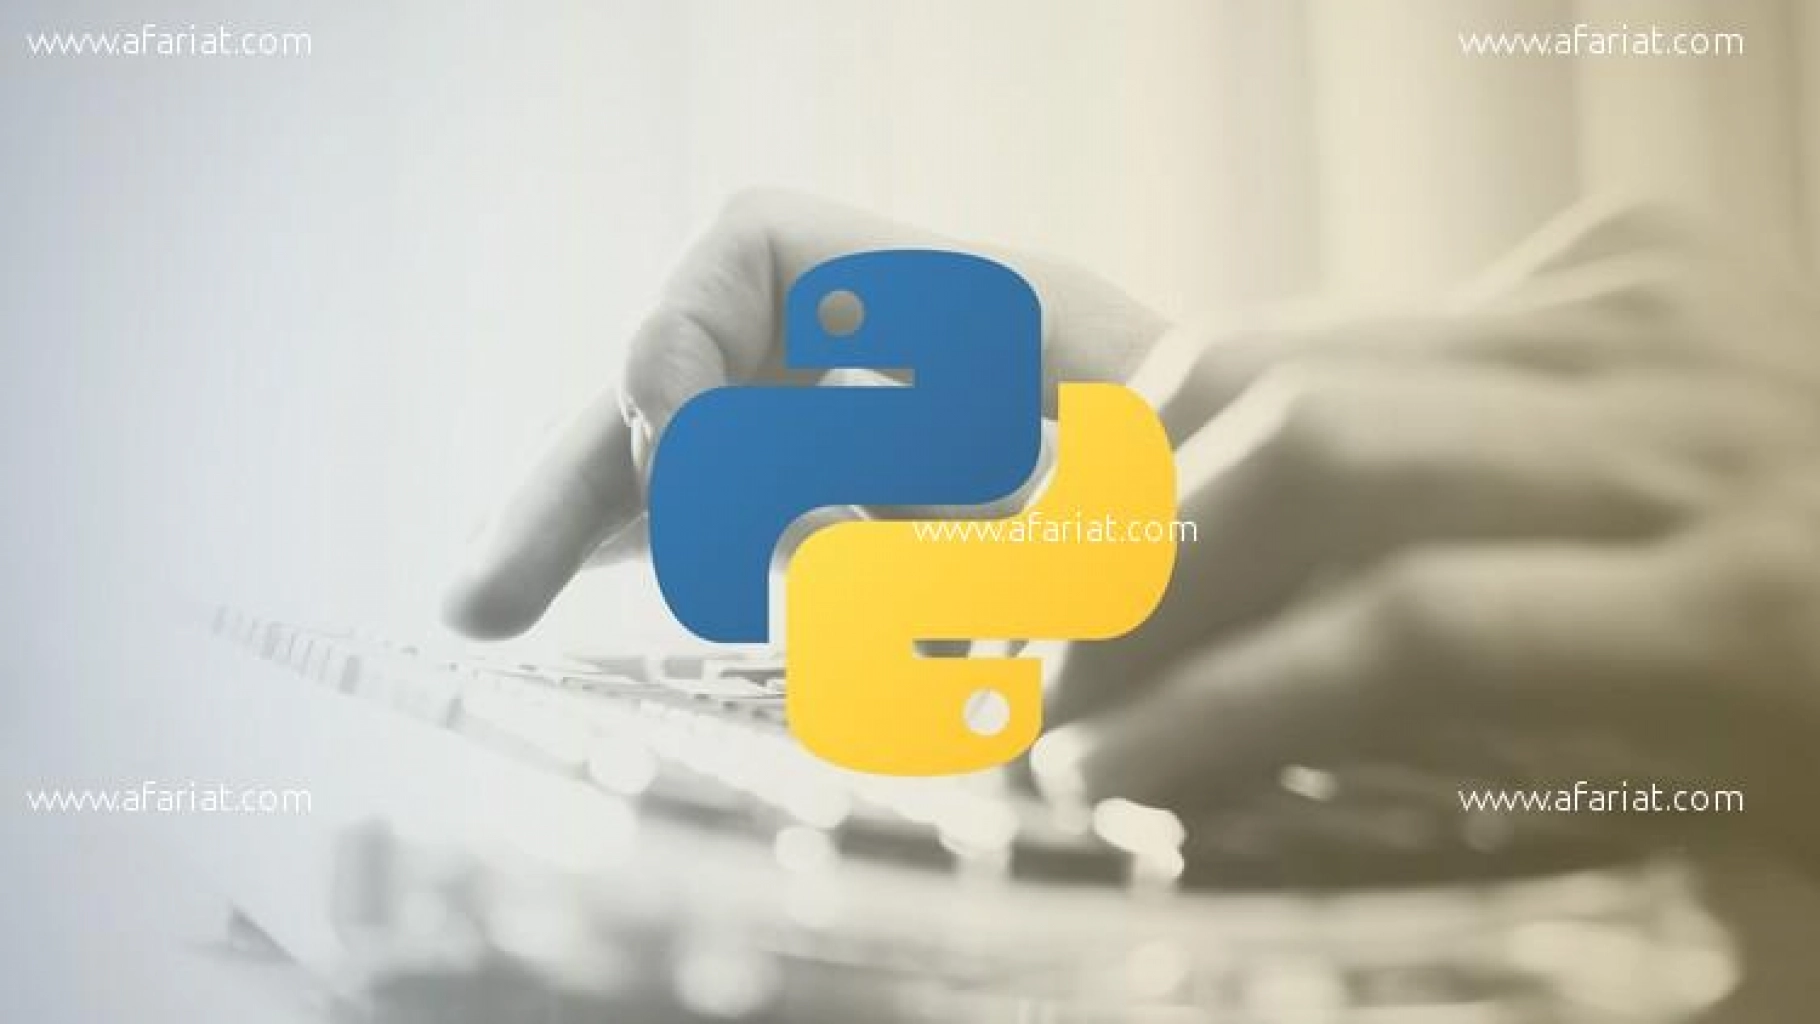 IMS : Formation Python certifié  avec réduction